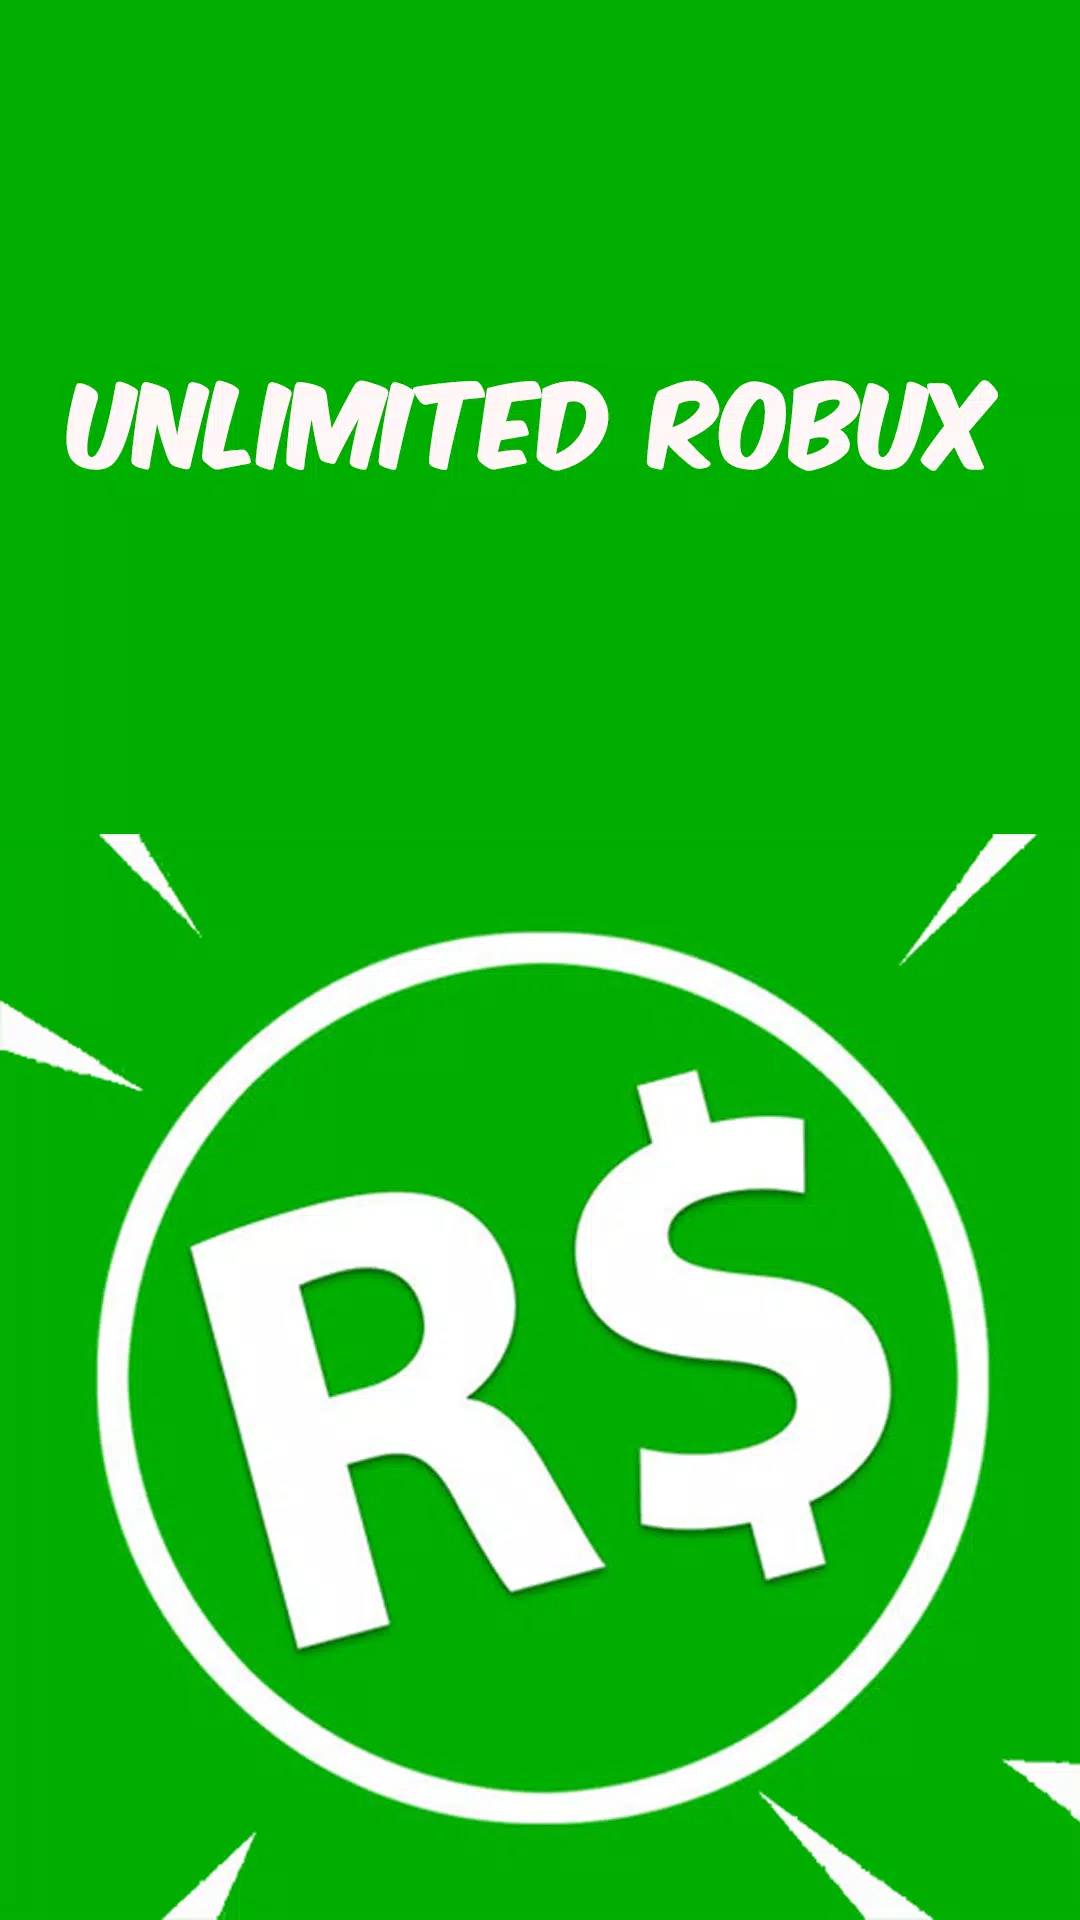 Robux grátis - Guia completo de como obter ROBUX GRÁTIS no roblox